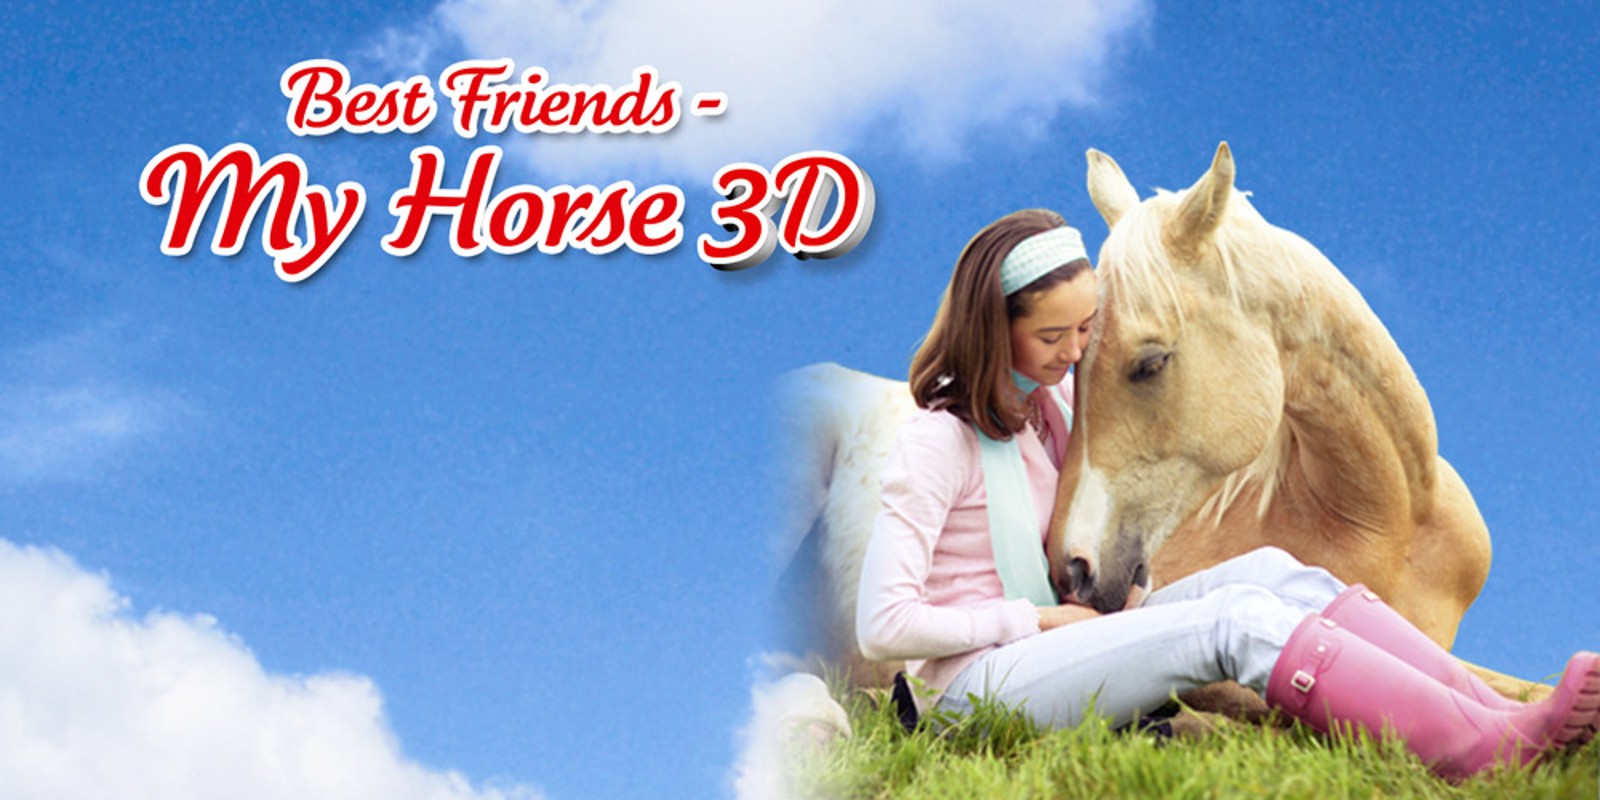 Best Friends - My Horse 3D | Nintendo 3DS | Games | Nintendo1600 x 800